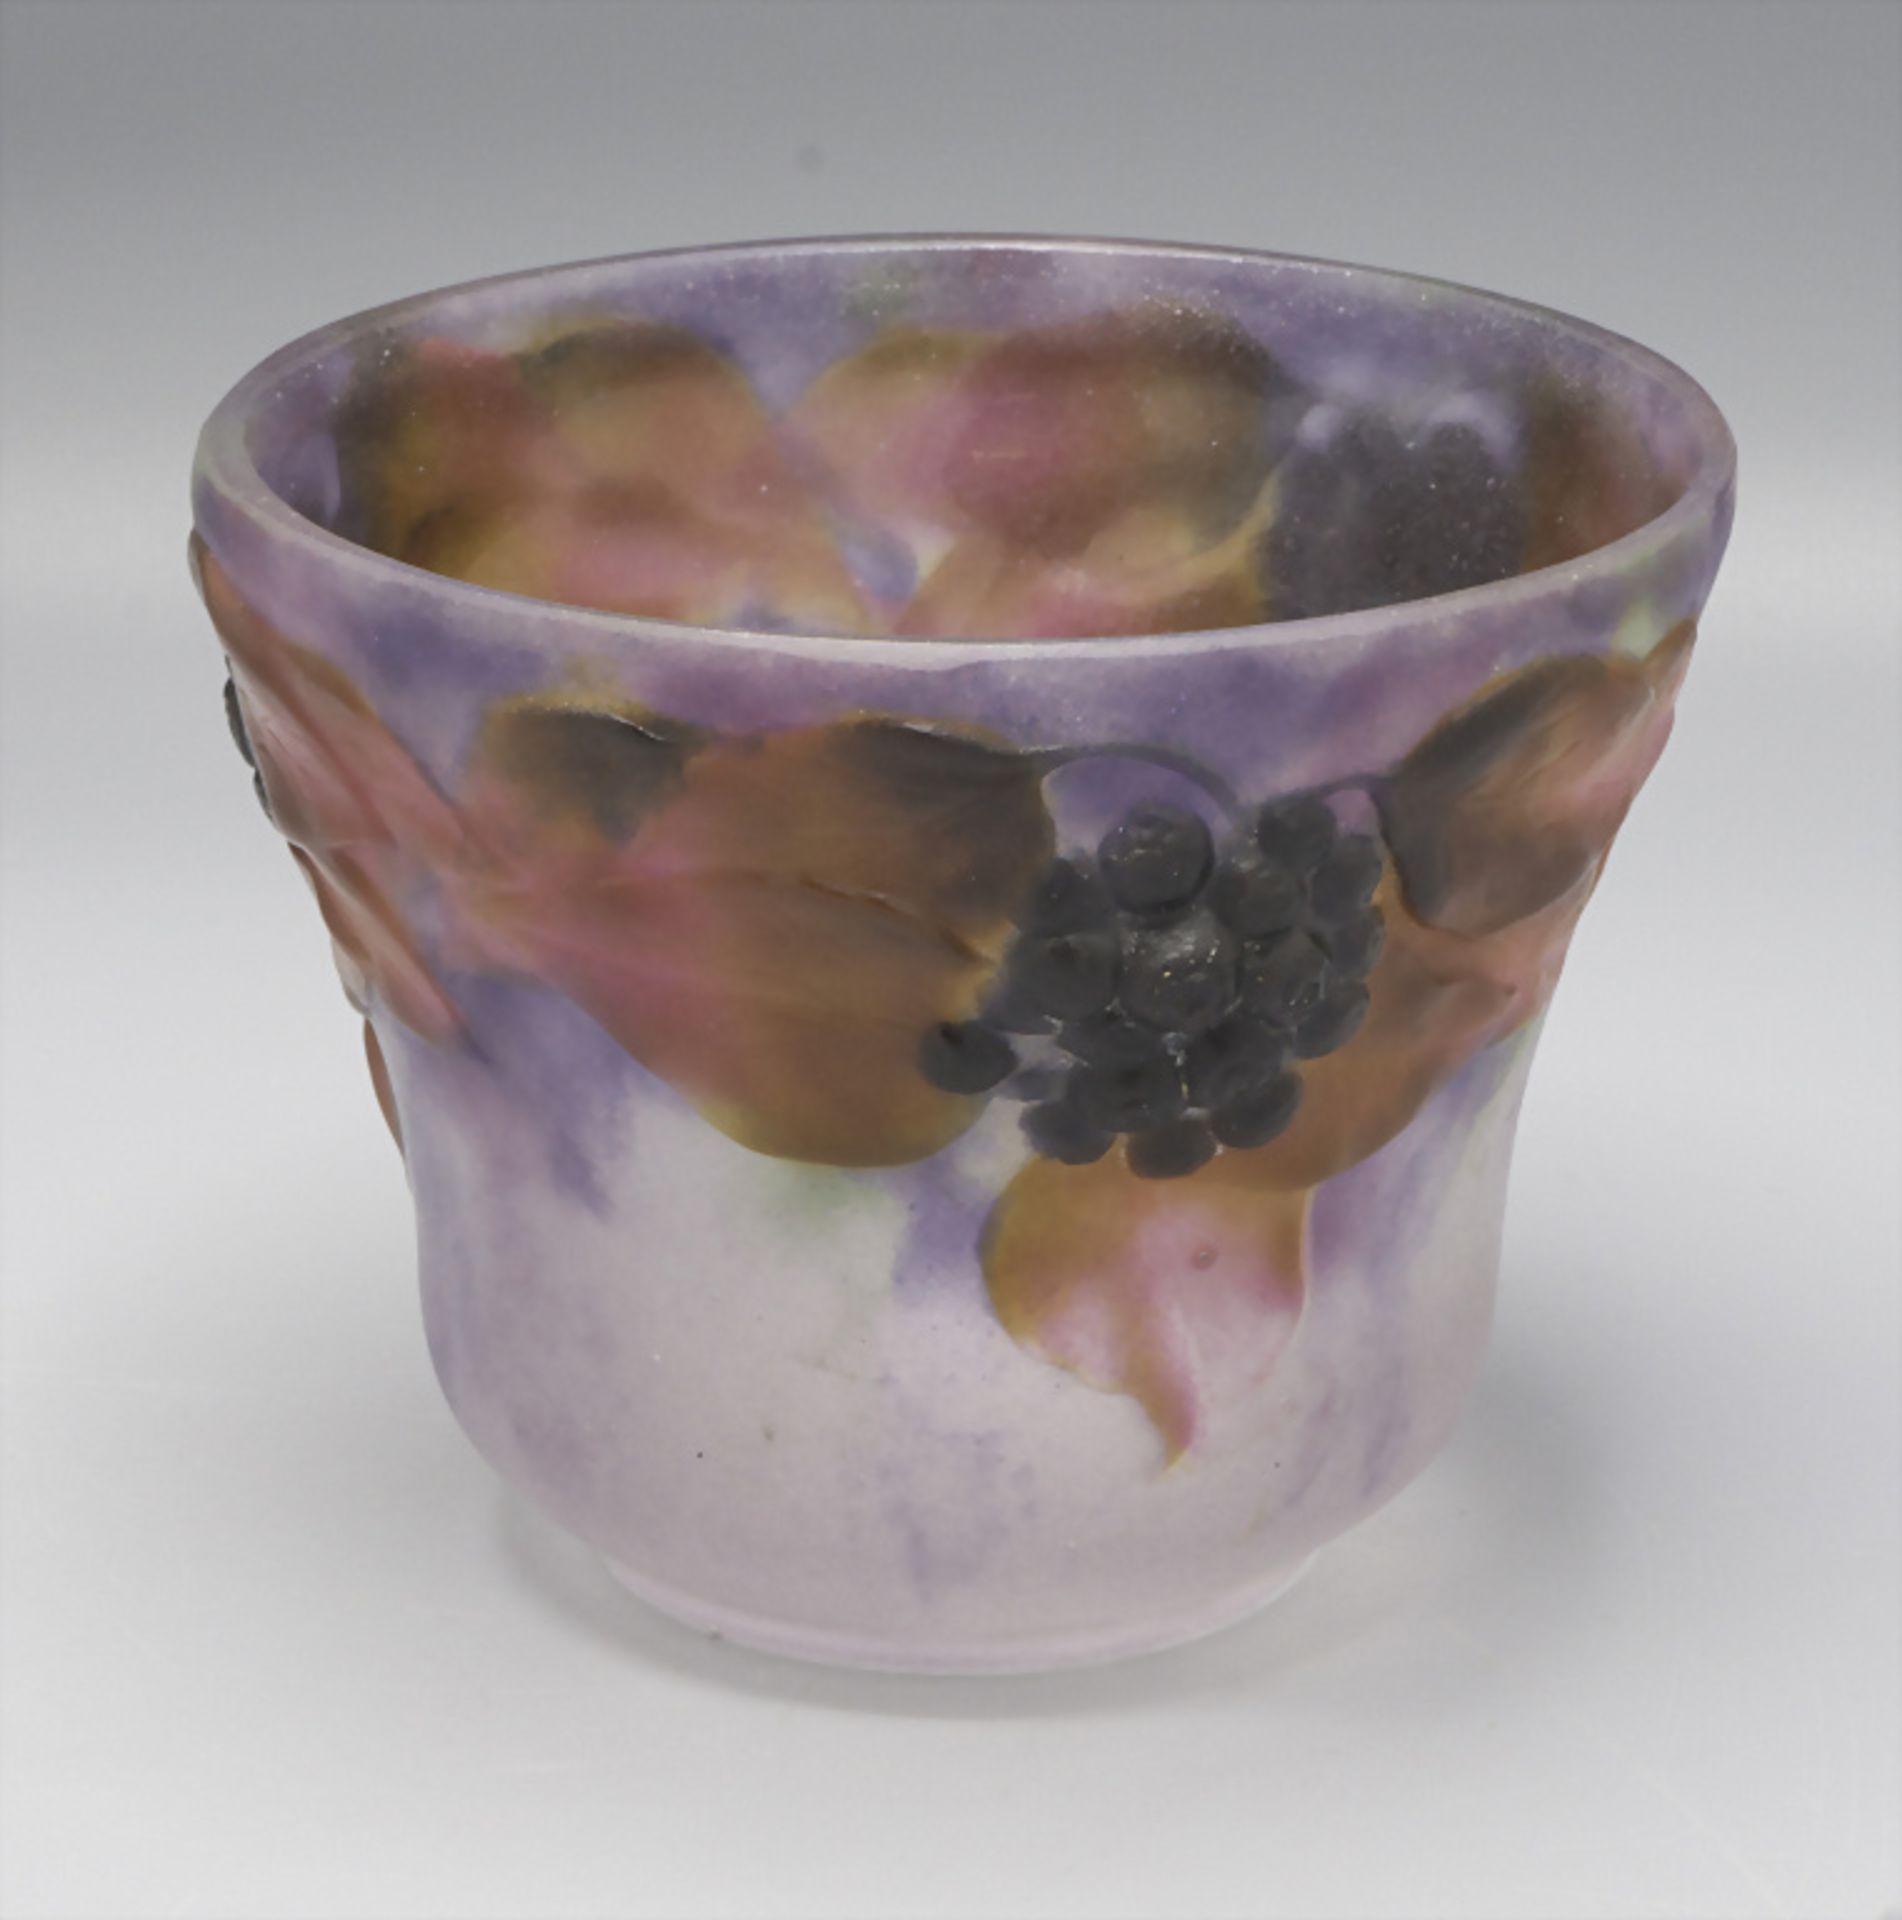 Jugendstil Schale 'Lierre' / Art Déco glass bowl 'Ivy', Gabriel Argy-Rousseau, Paris, 1919